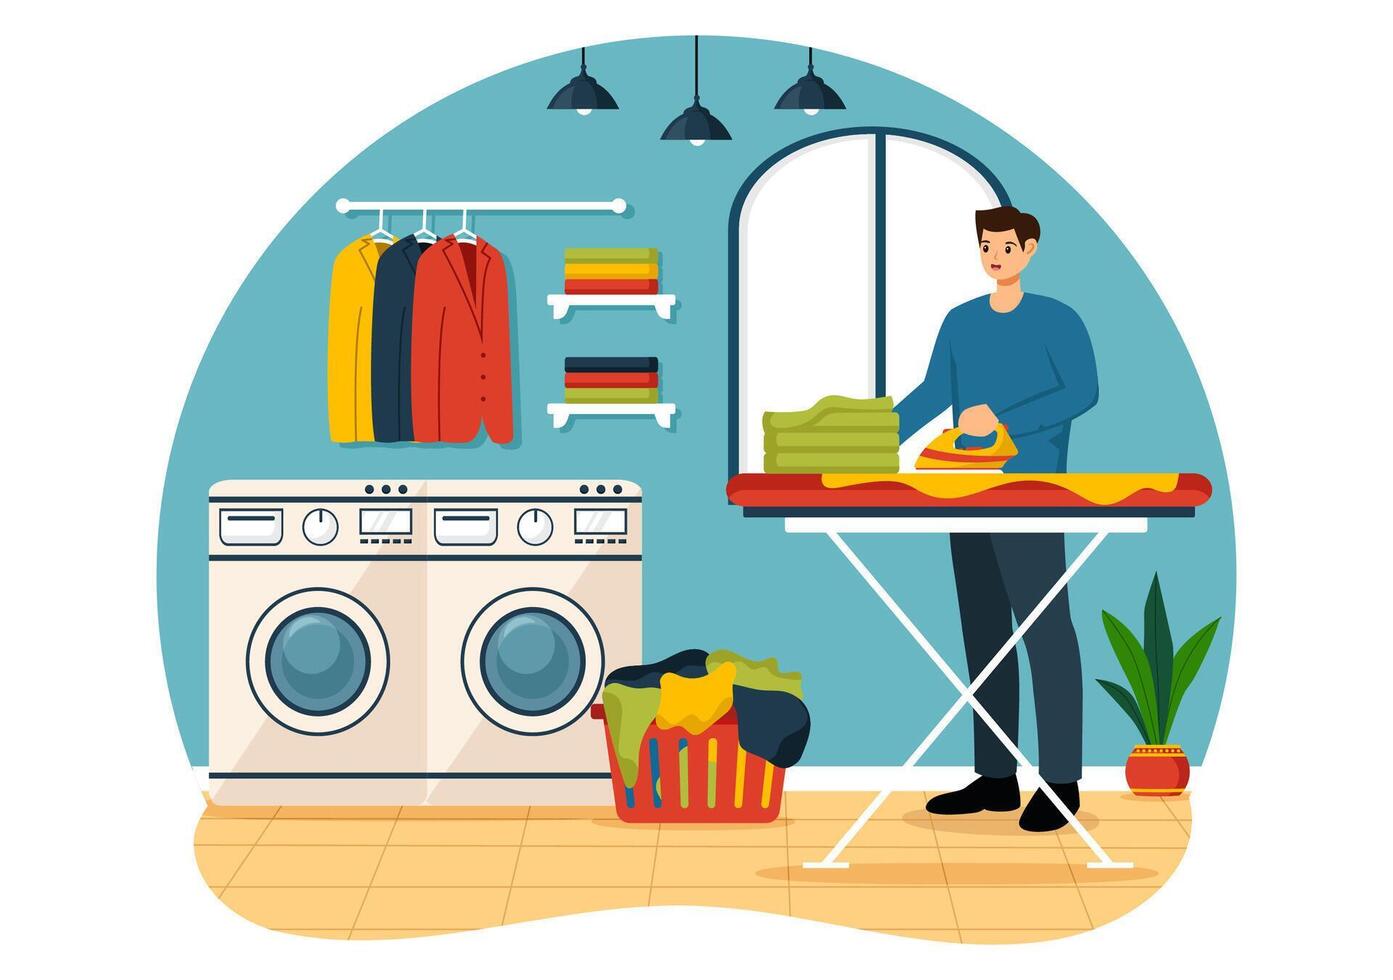 seco limpieza Tienda Servicio ilustración con Lavado máquinas, secadoras y lavandería para limpiar ropa en plano dibujos animados antecedentes diseño vector